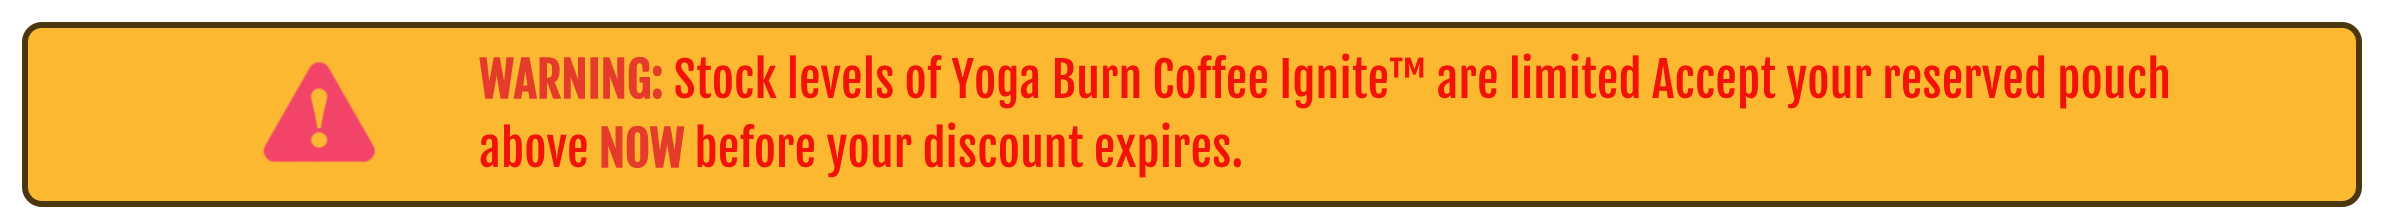 Yoga Burn Coffee Ignite